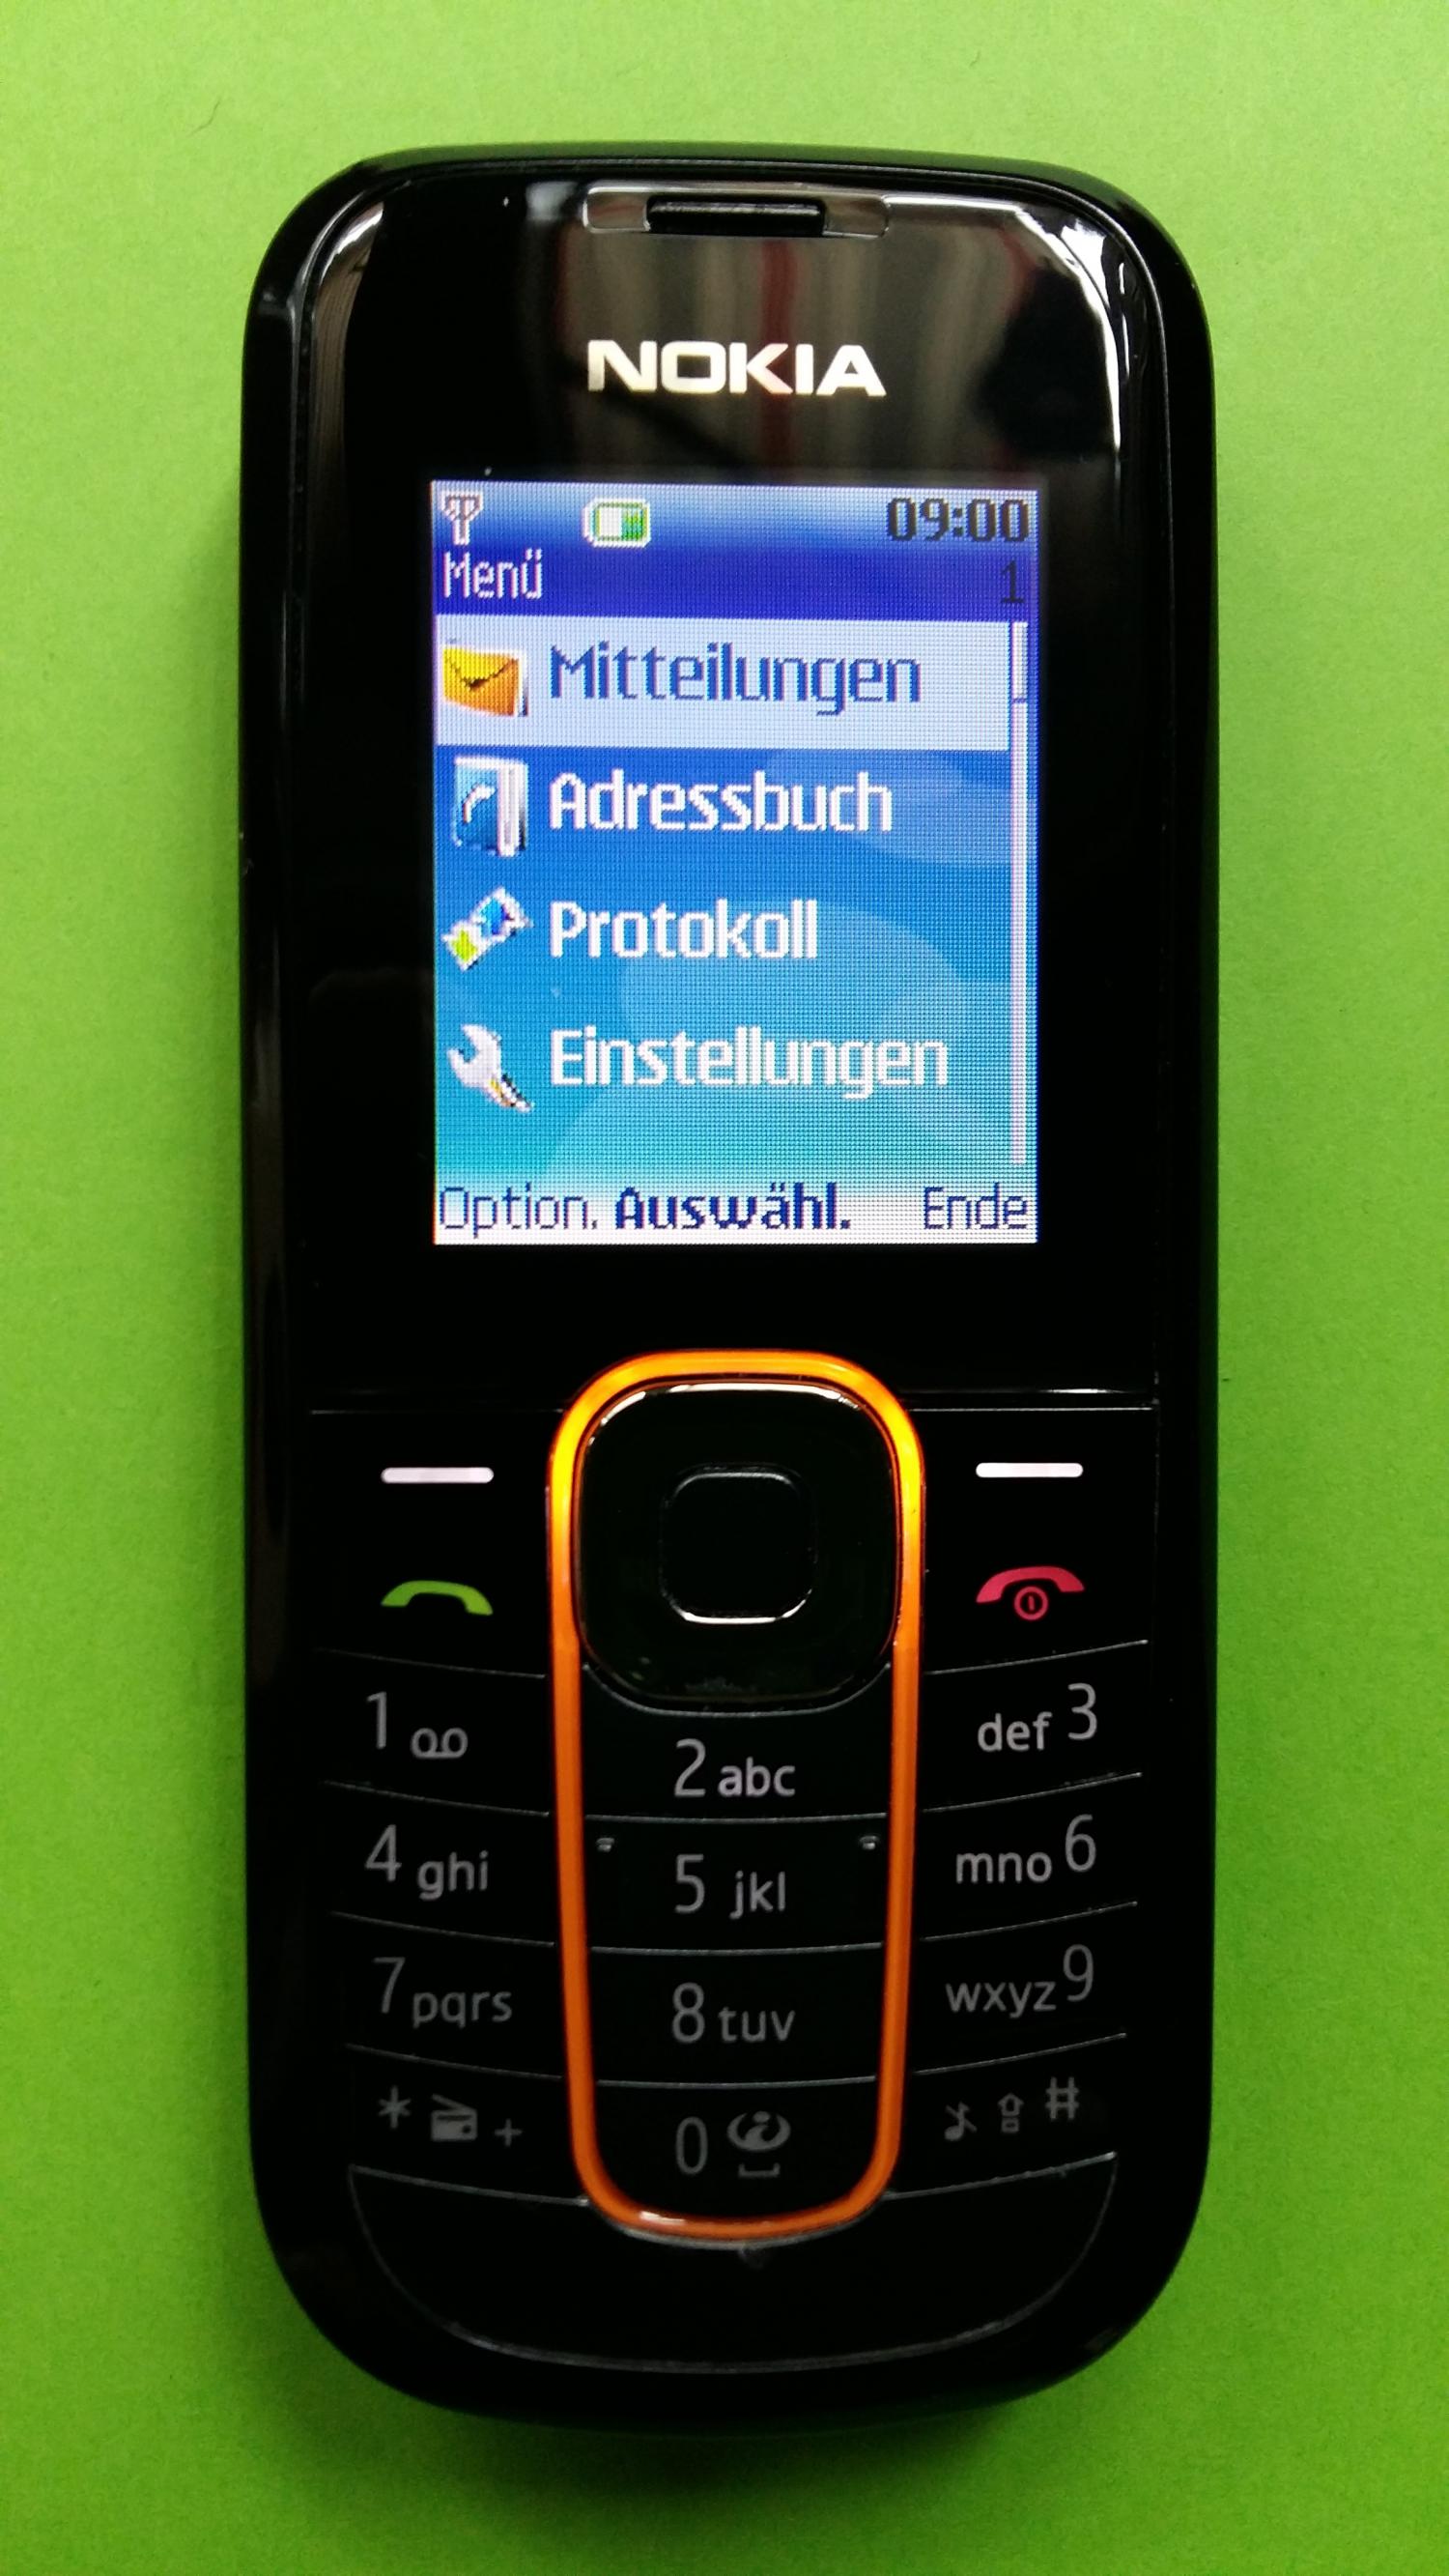 image-7301556-Nokia 2600C-2 (2)1.jpg